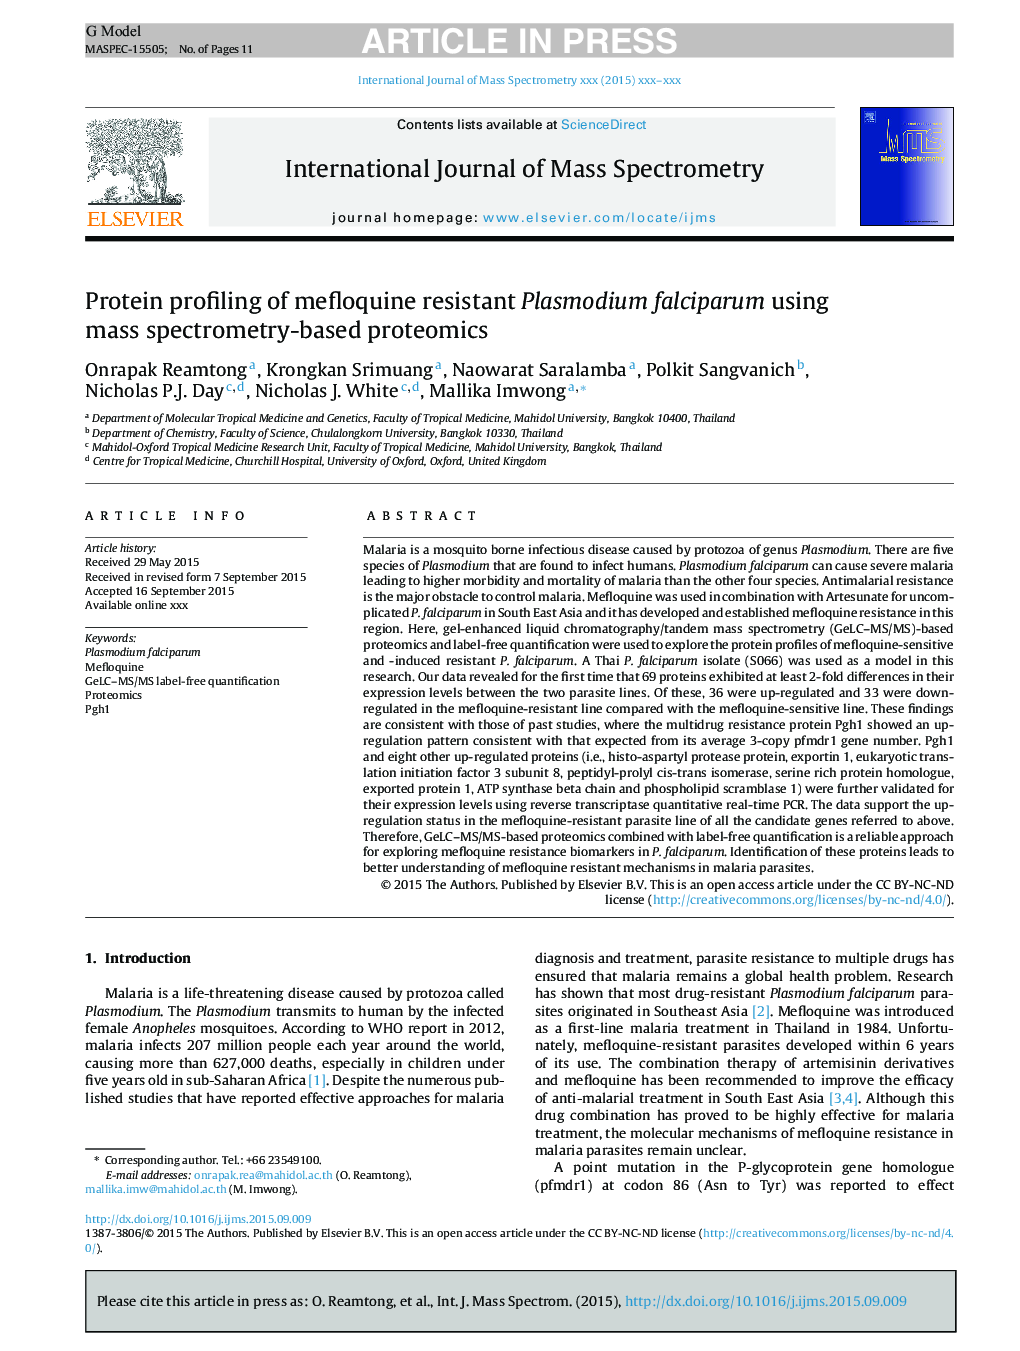 بررسی پروتئین های پلاسمودیوم فالسیپاروم با مفالوفین با استفاده از پروتئومیک مبتنی بر اسپکترومومتری جرمی 